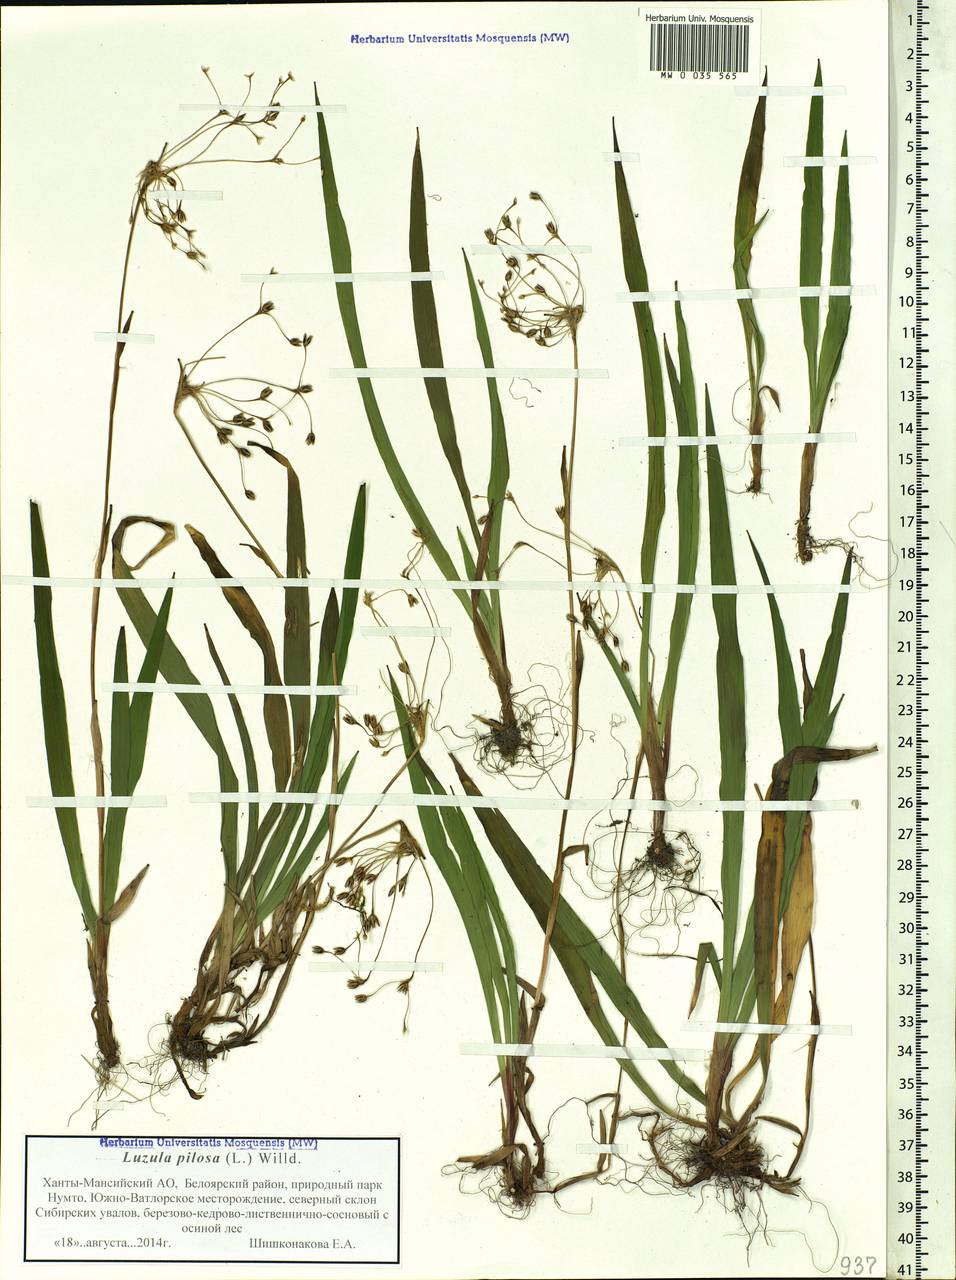 Luzula pilosa (L.) Willd., Siberia, Western Siberia (S1) (Russia)